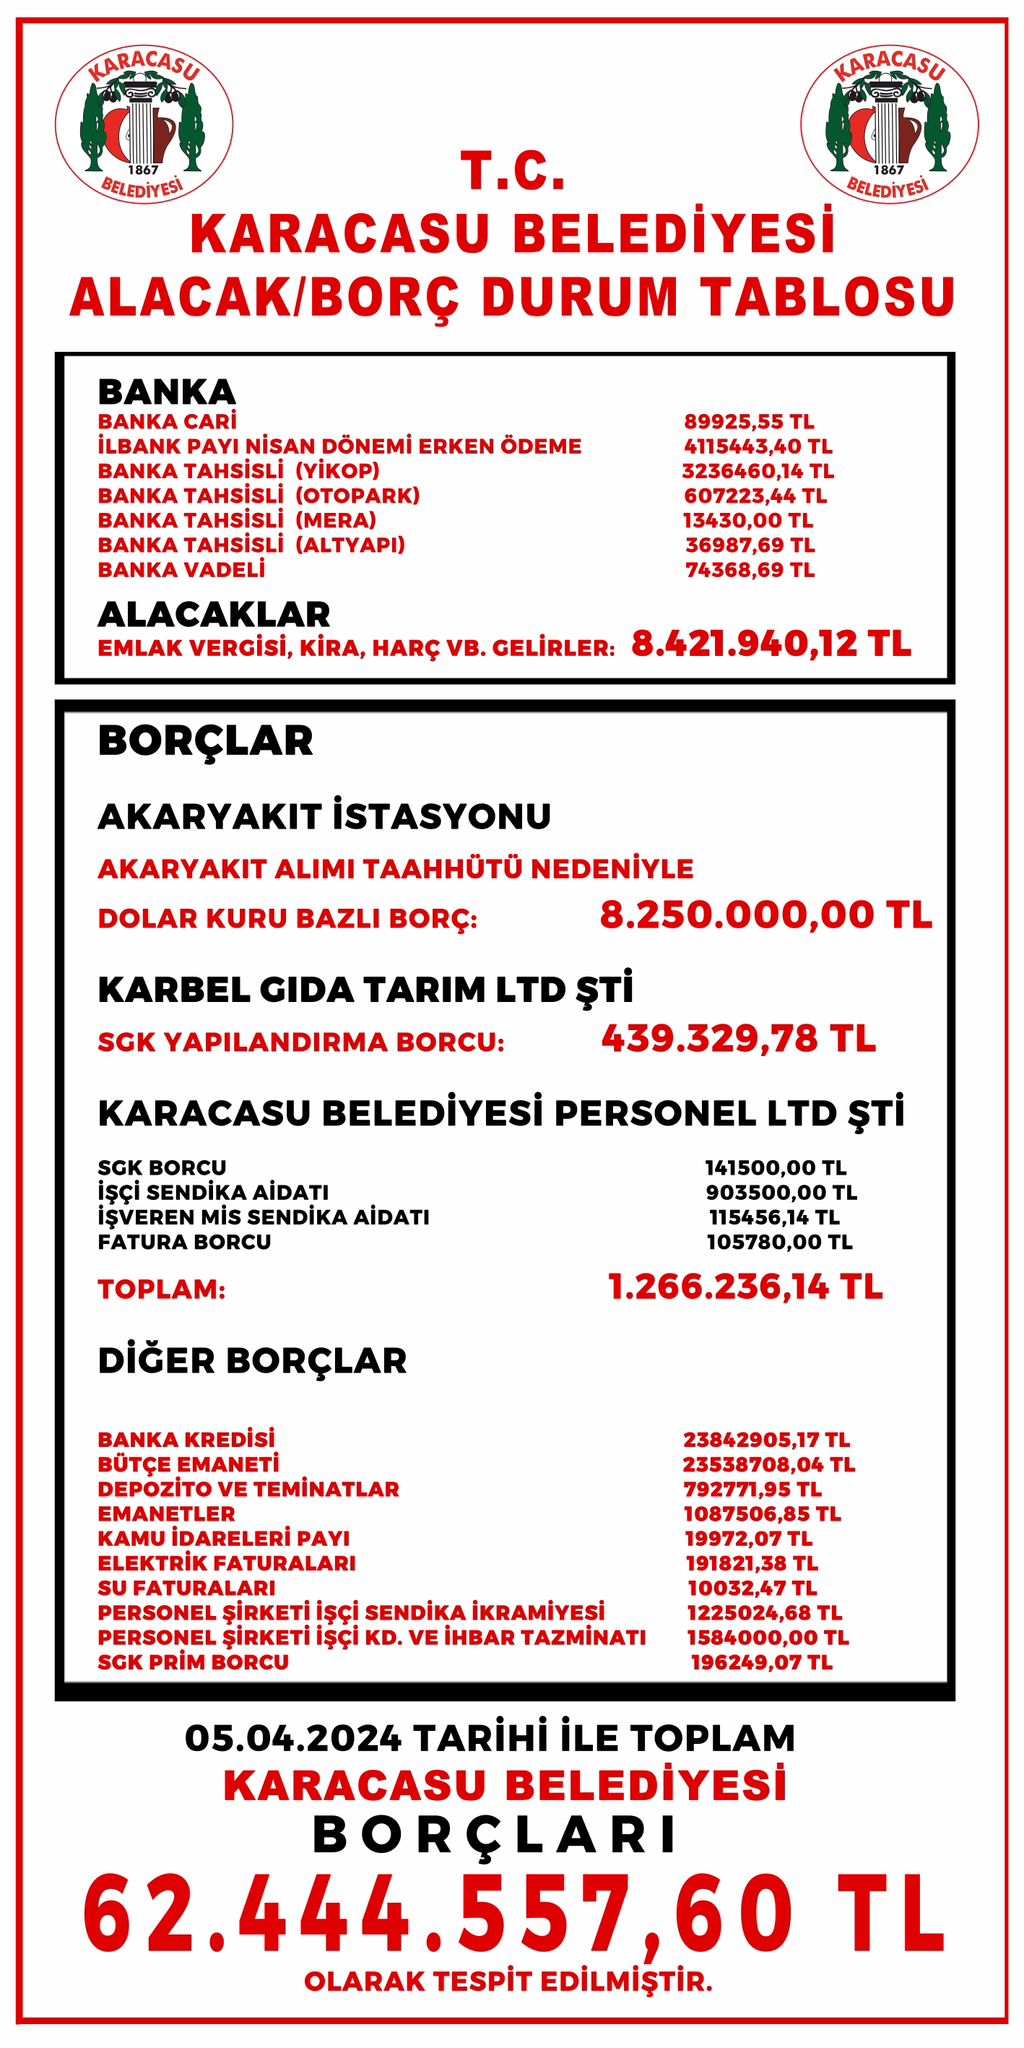 Karacasu Belediyesi Borclari Pankart Yapip Asti Toplam Borc 62 Milyon 444 Bin Lira 463805 E04C5E53498E7F8D7411E181Cf411A2B